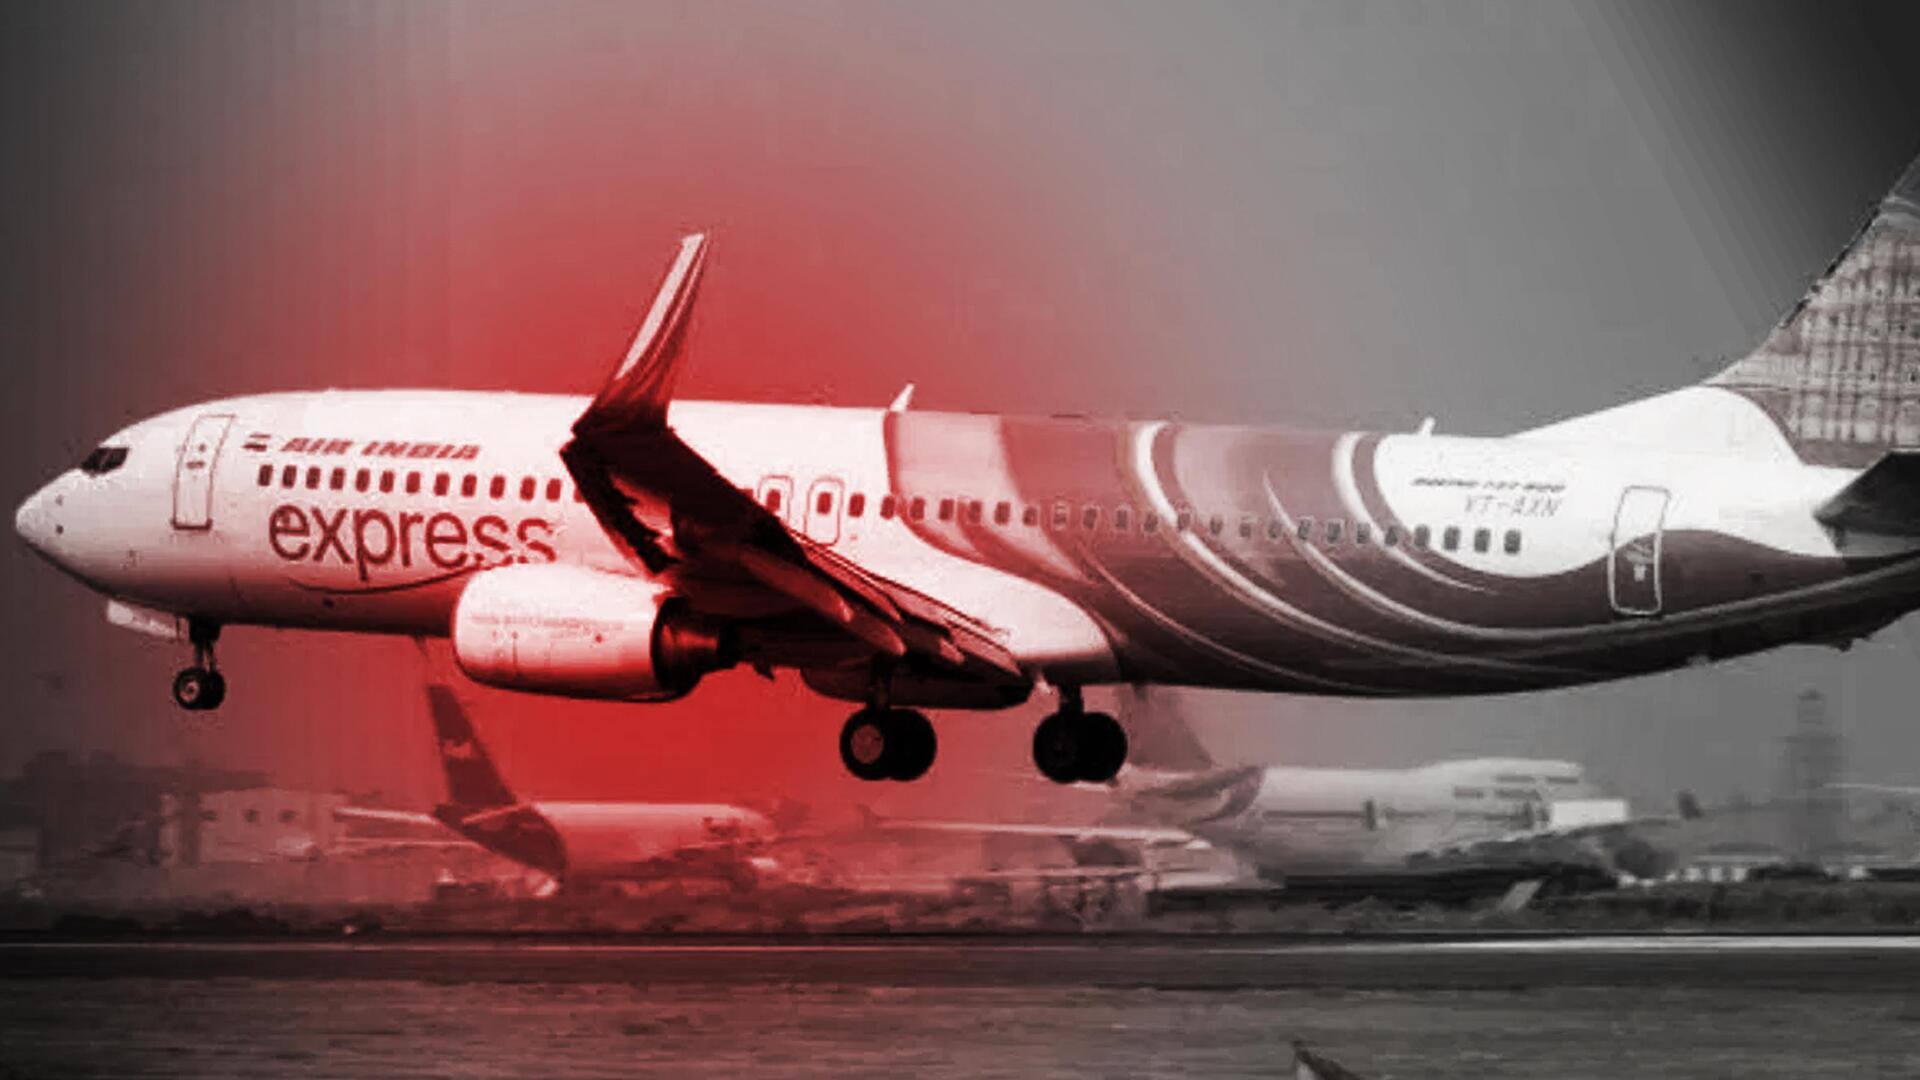 एयर इंडिया एक्सप्रेस ने 30 कर्मचारियों को नौकरी से निकाला, 'सामूहिक छुट्टी' के बाद कार्रवाई